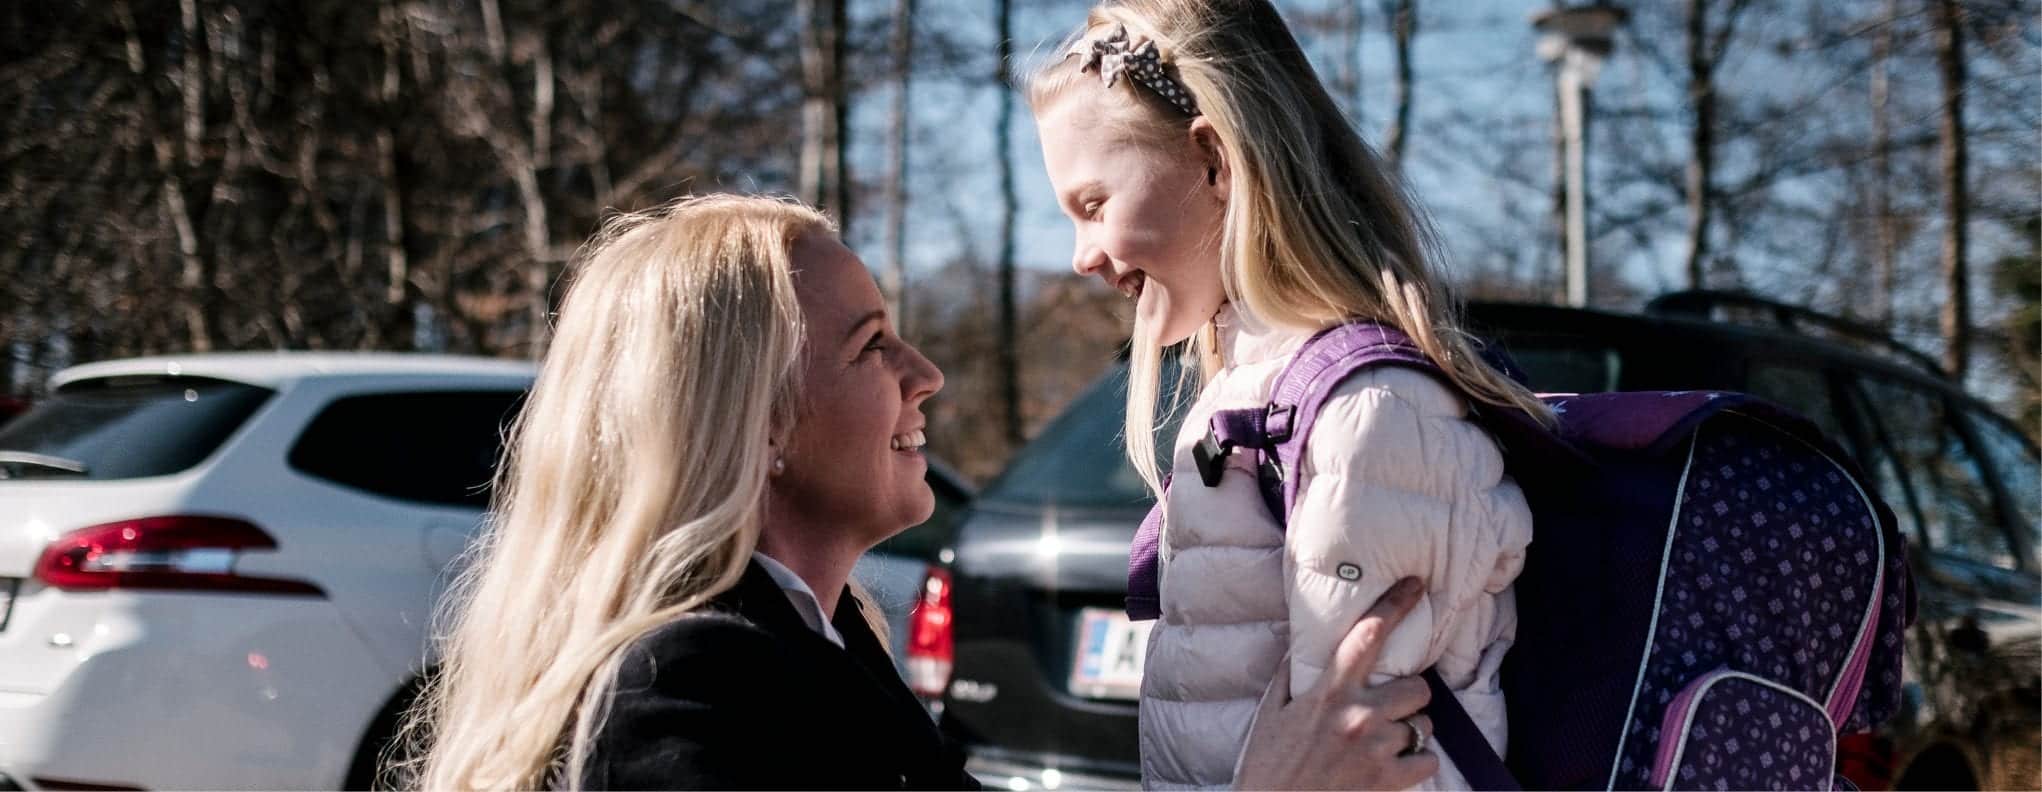 En mor siger farvel til sin datter, som er på vej i skole.